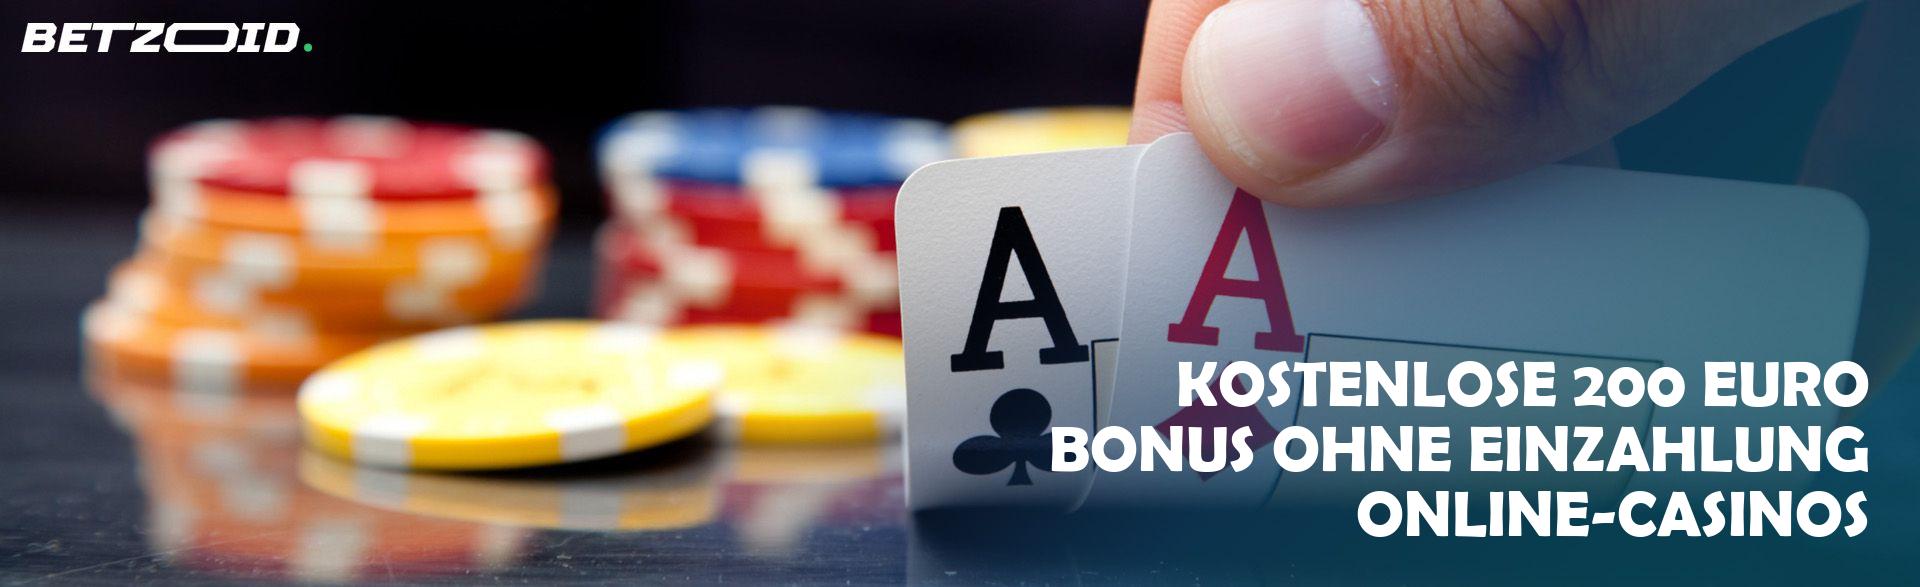 Kostenlose 200 Euro Bonus ohne Einzahlung Online-Casinos.